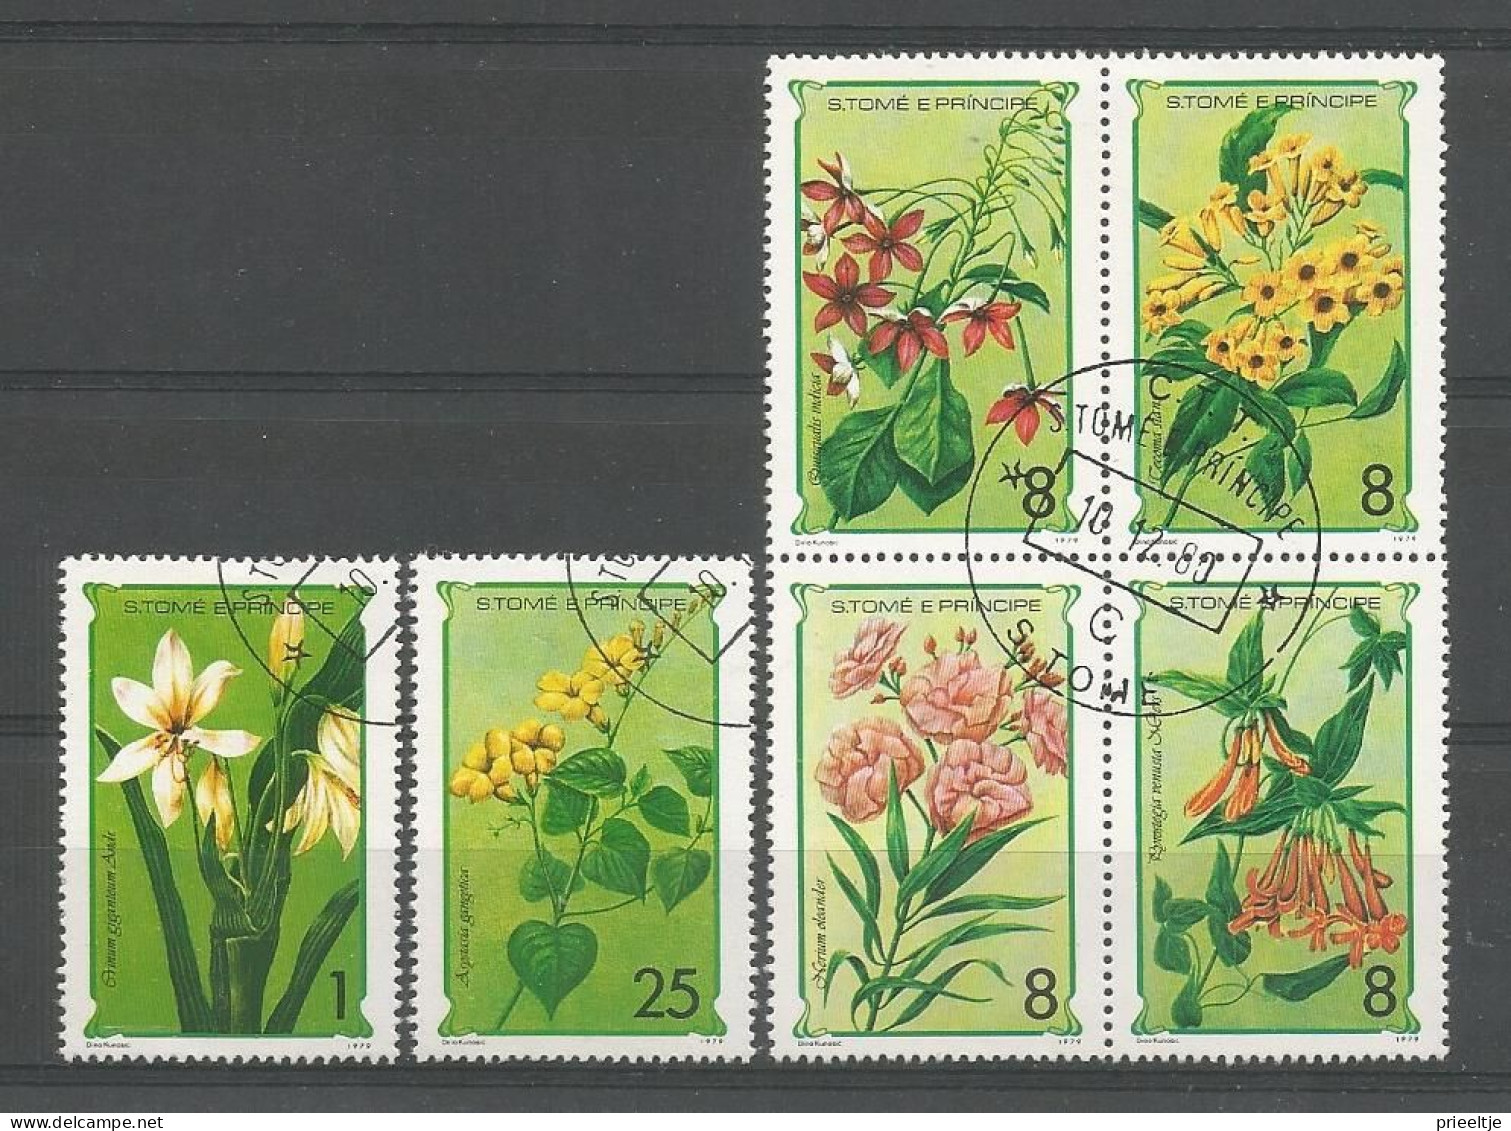 St Tome E Principe 1979 Flowers Y.T. 536/541 (0) - São Tomé Und Príncipe